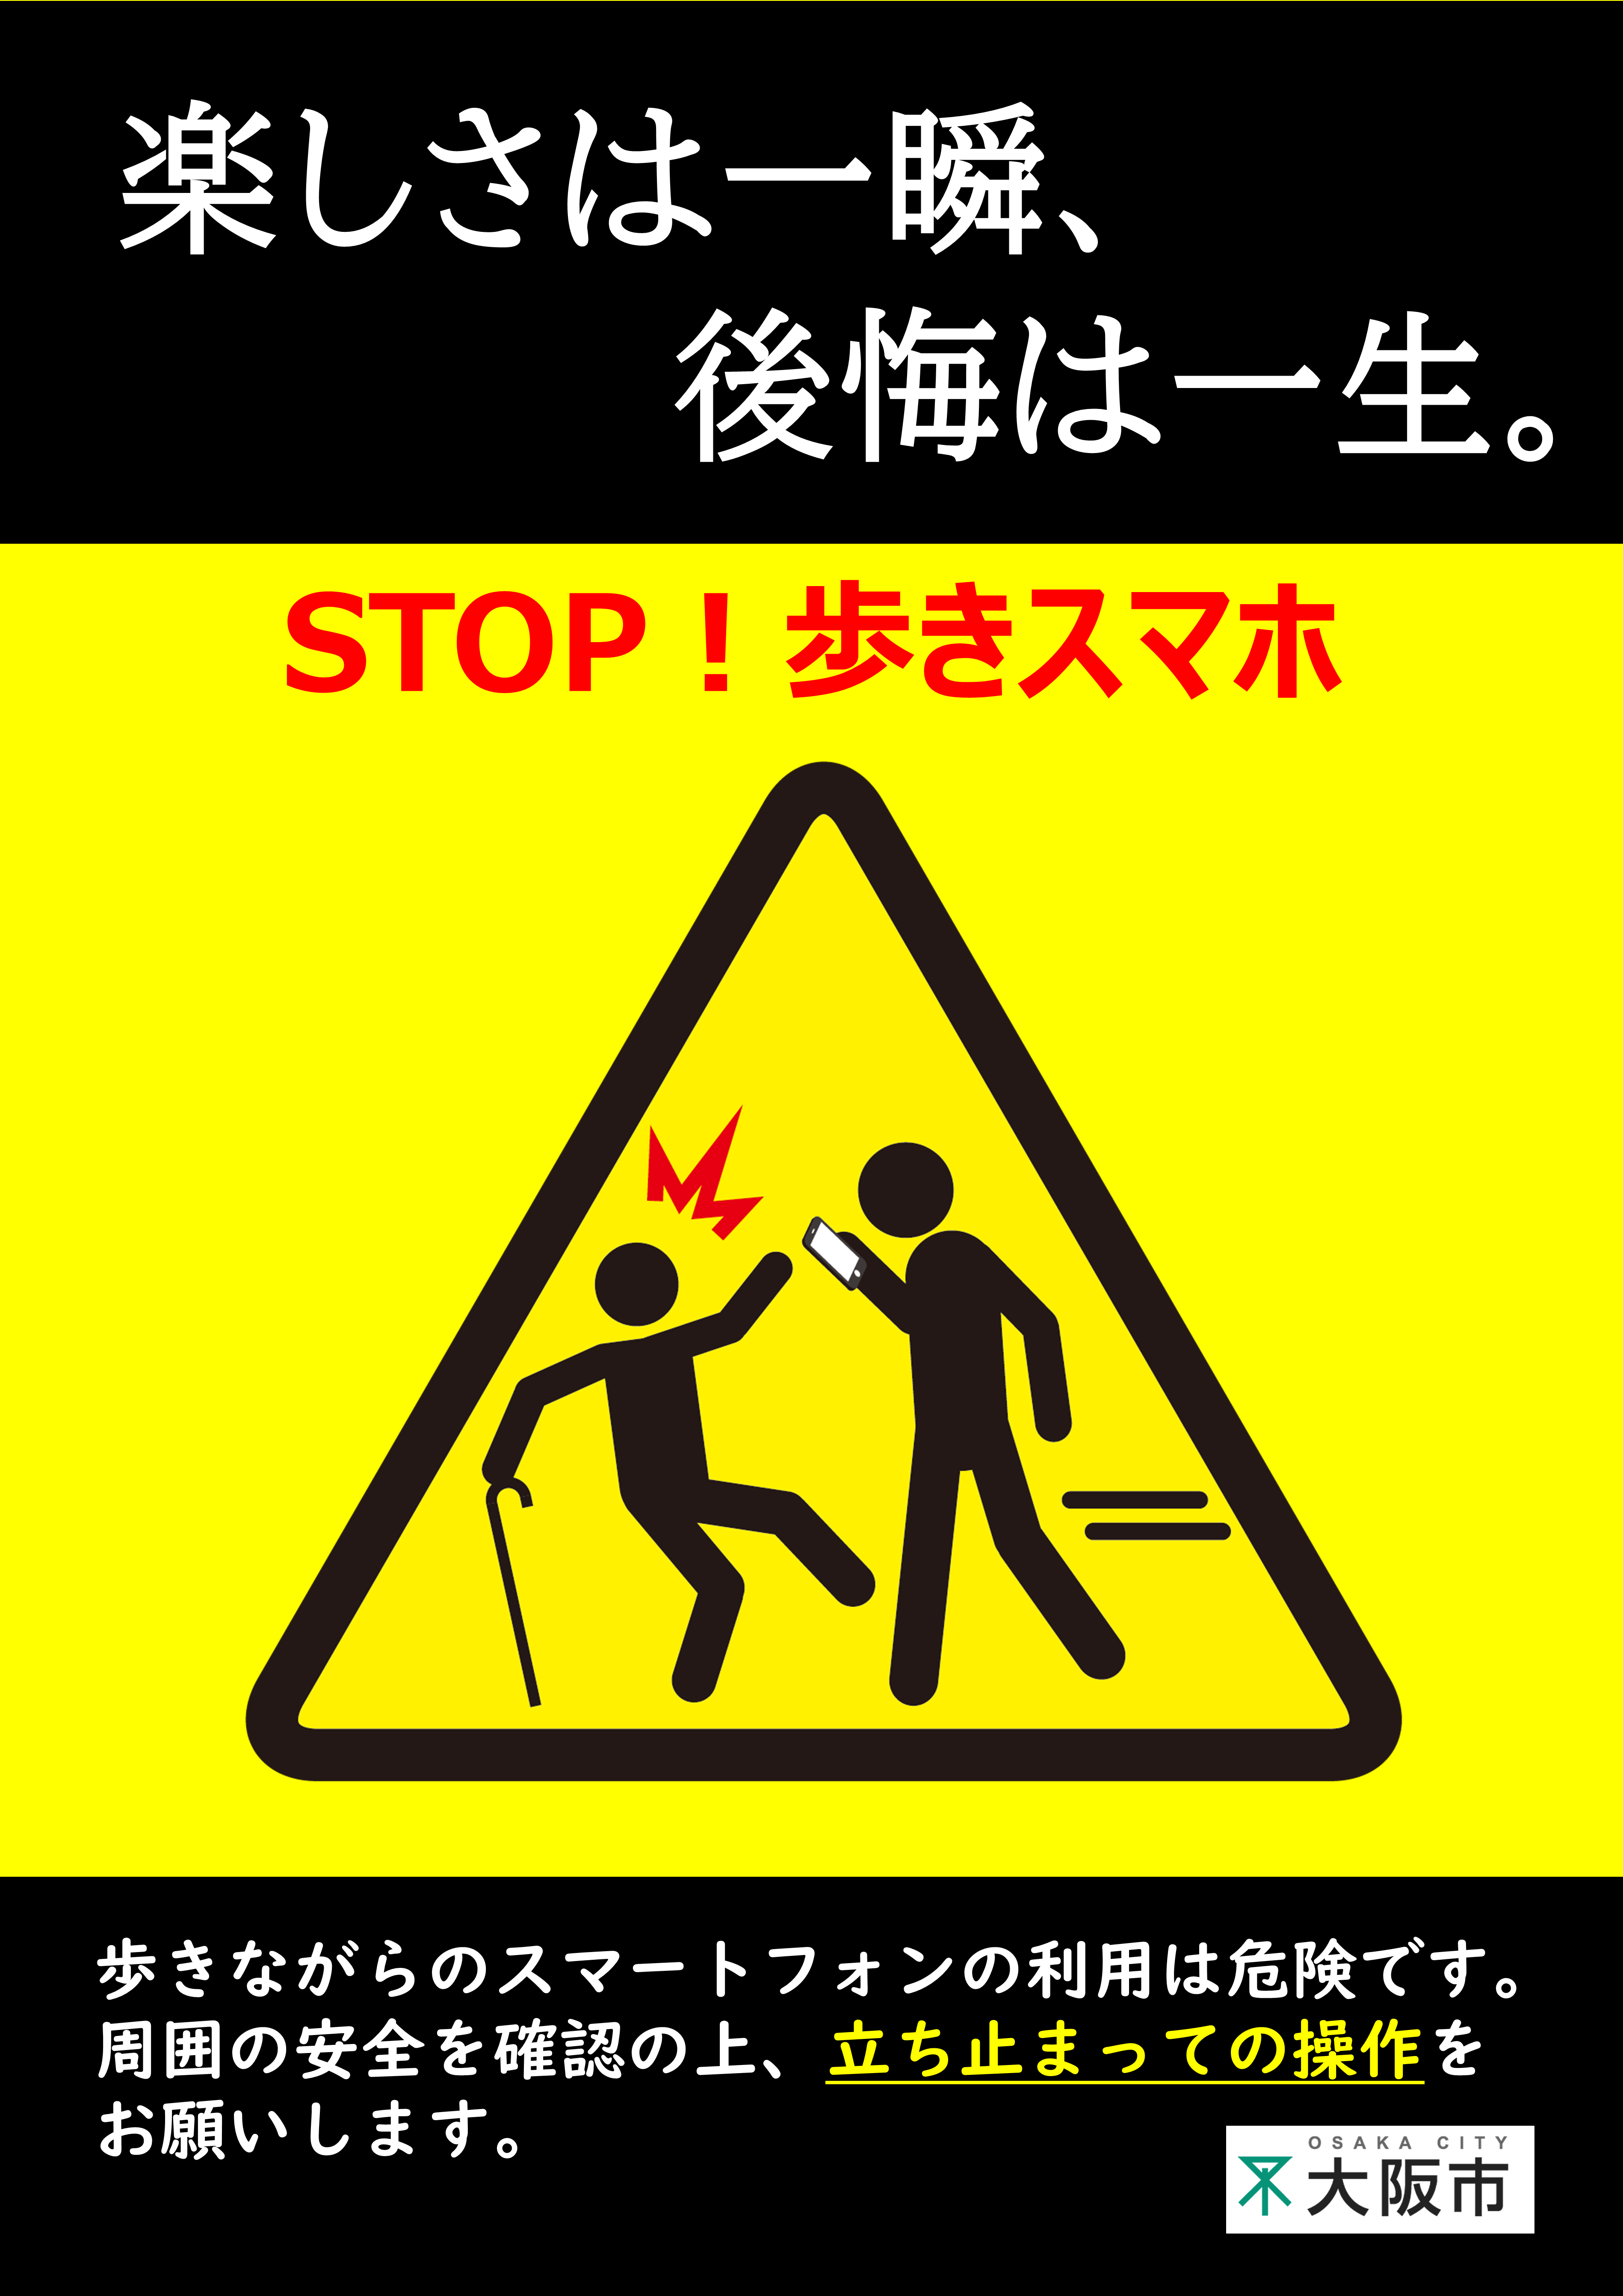 大阪市 歩きスマホ はやめましょう 交通安全 交通安全に関する情報